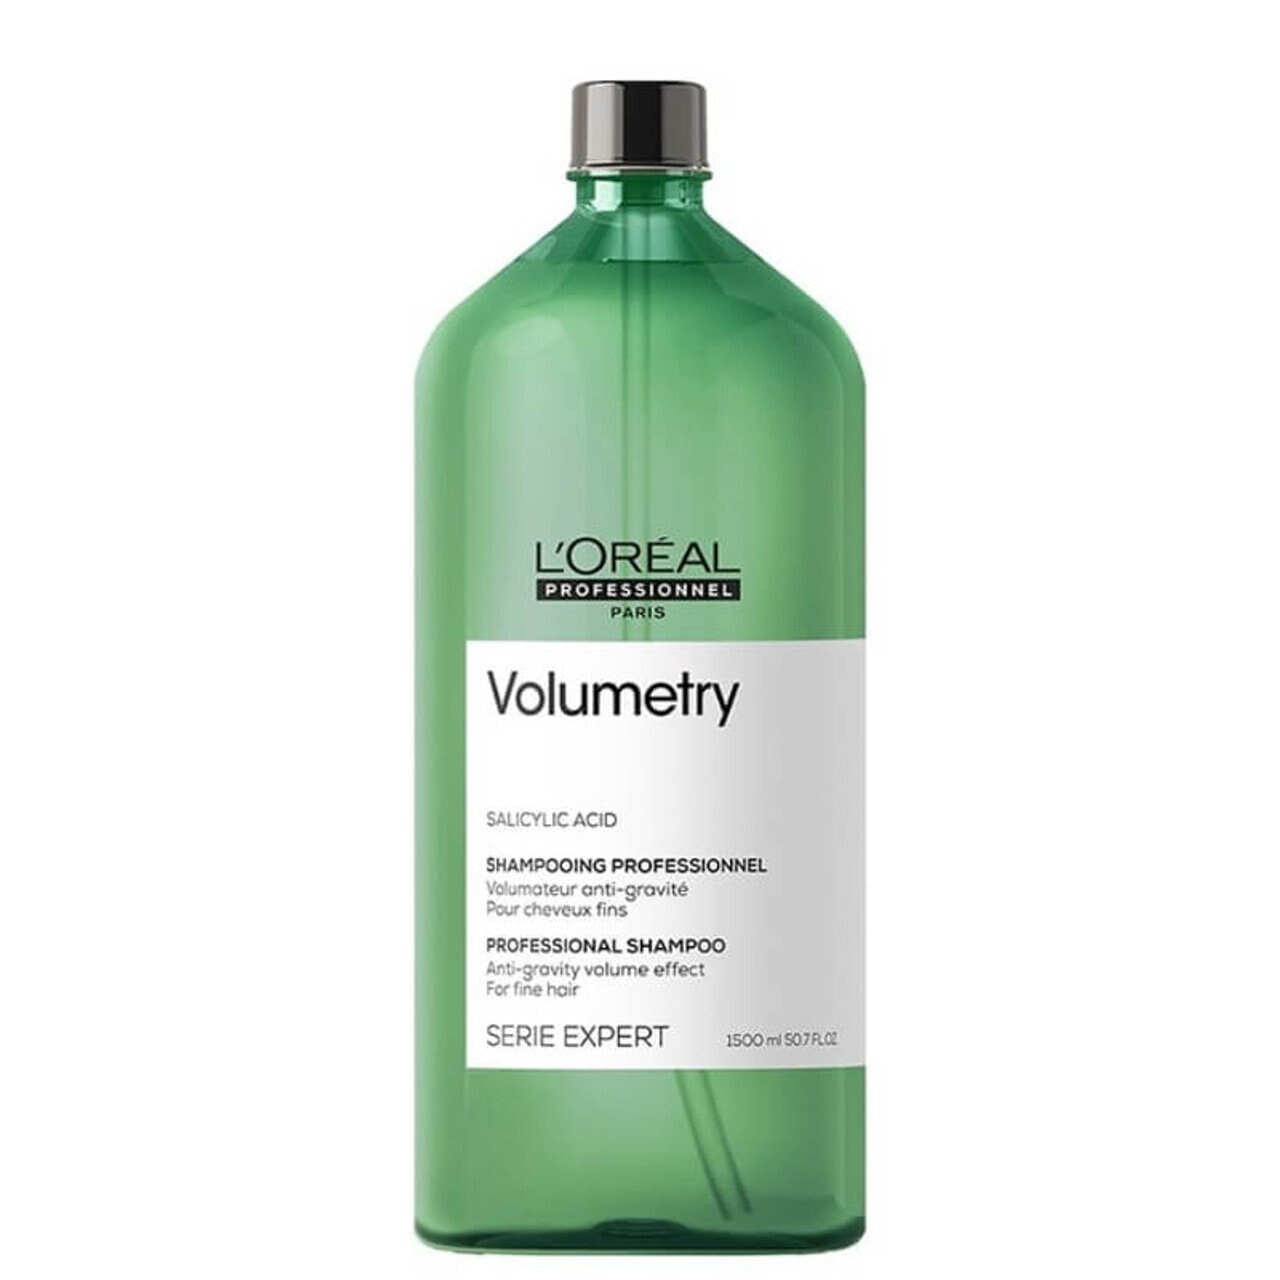 L'Oreal Paris SerieExpert Salicylic Acid Volumetry Shampoo Придающий объем шампунь, с салициловой кислотой для  тонких волос  1500 мл